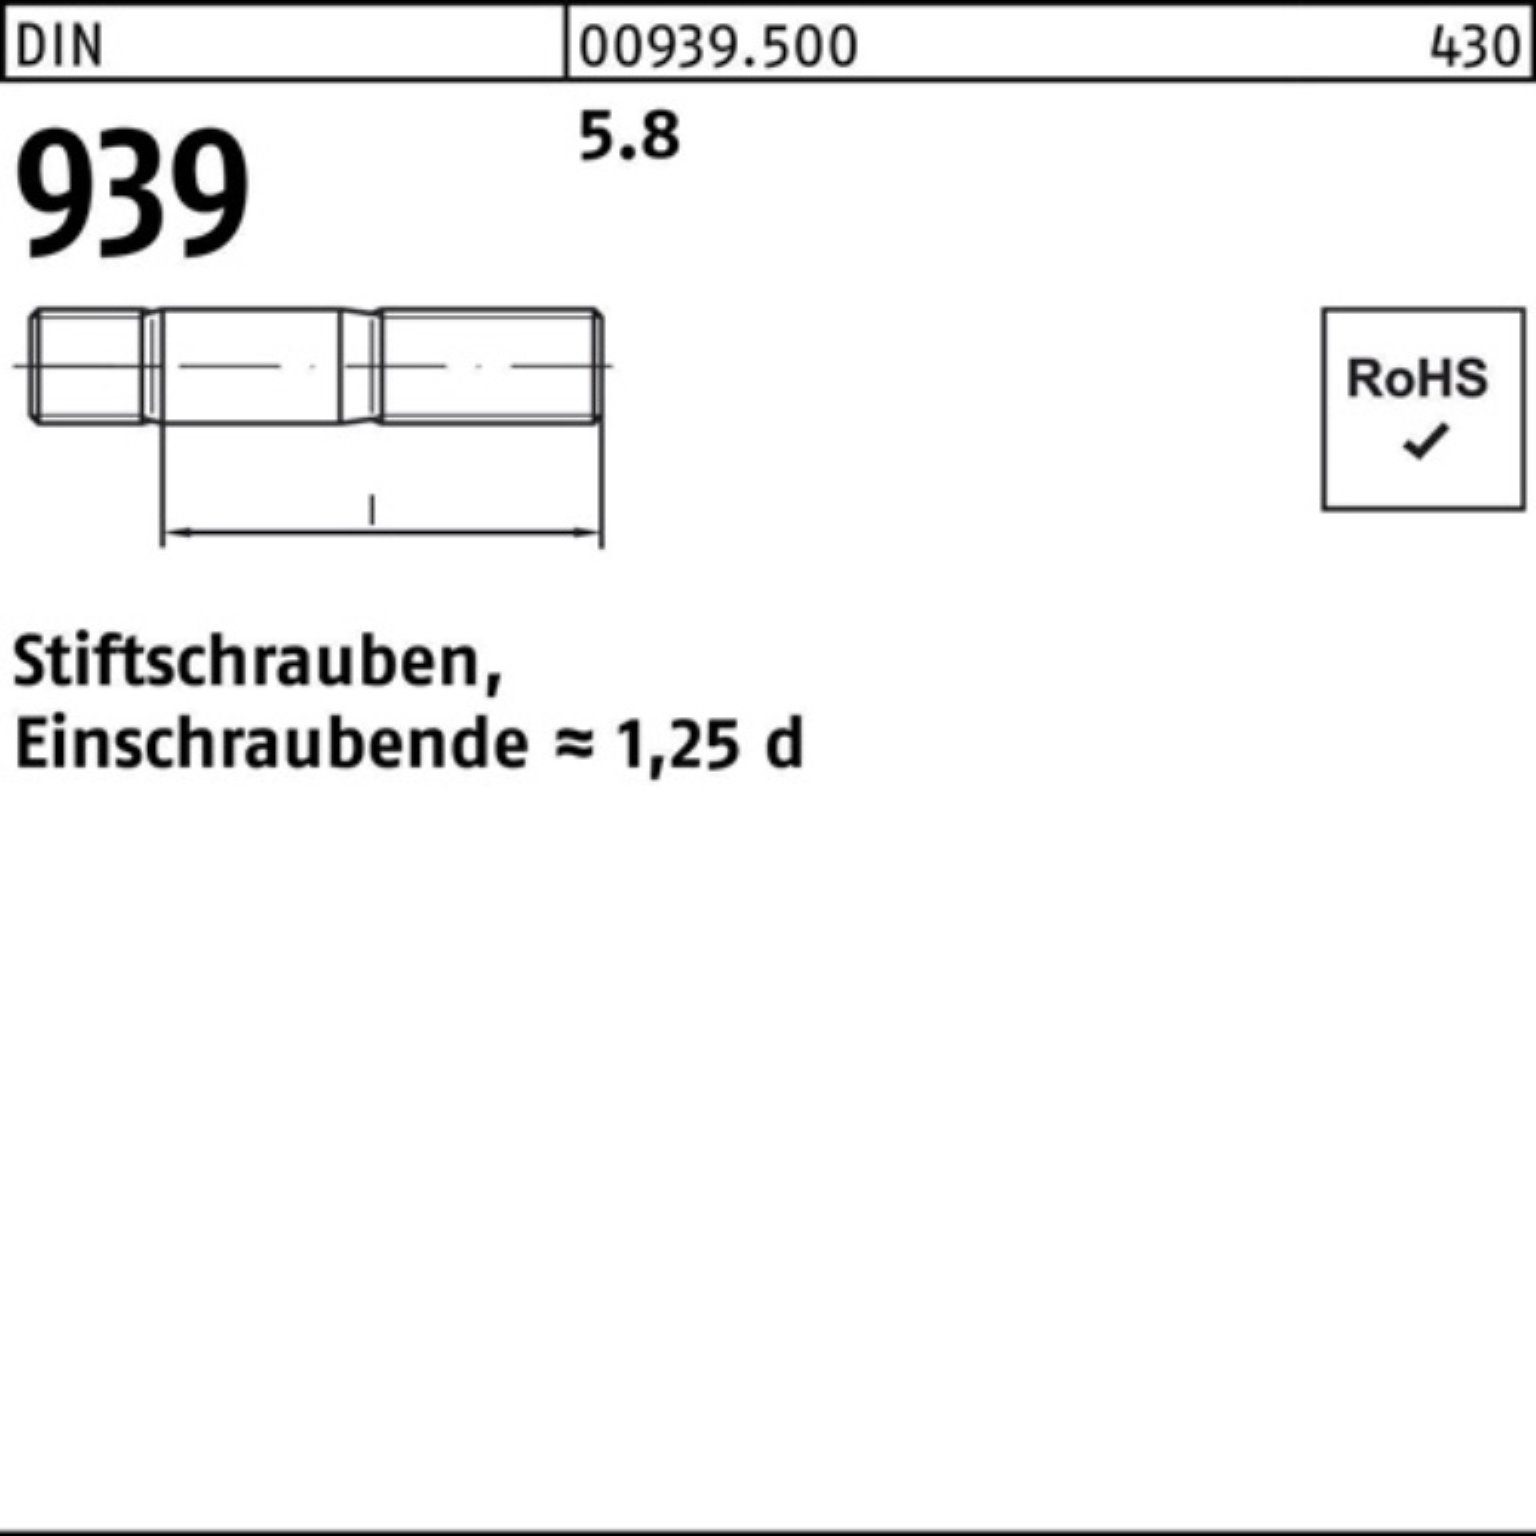 Reyher Stiftschraube 100er Pack Stiftschraube M10x 5.8 DIN 140 939 50 Einschraubende=1,25d